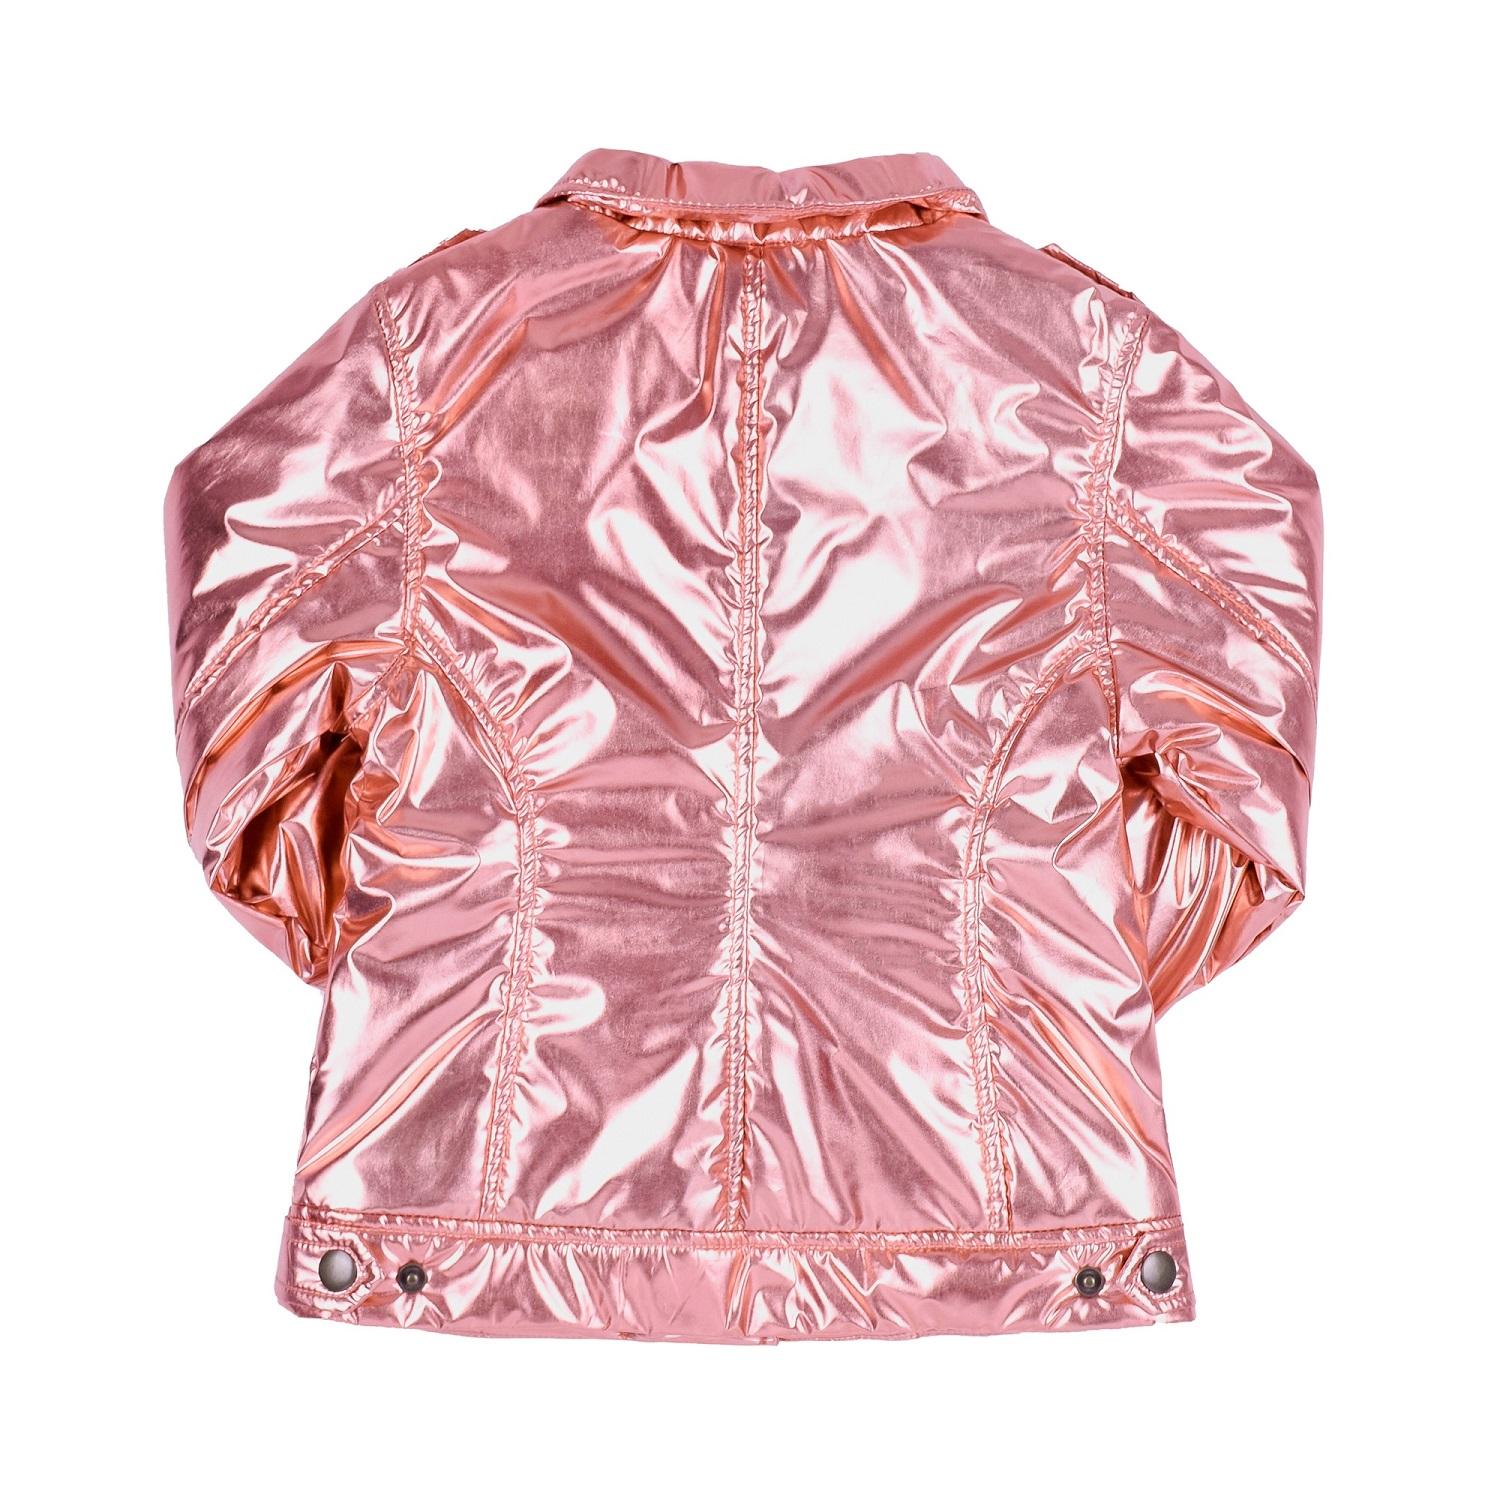 Дитяча демісезонний куртка для дівчинки, рожева (КТ206), Бембі